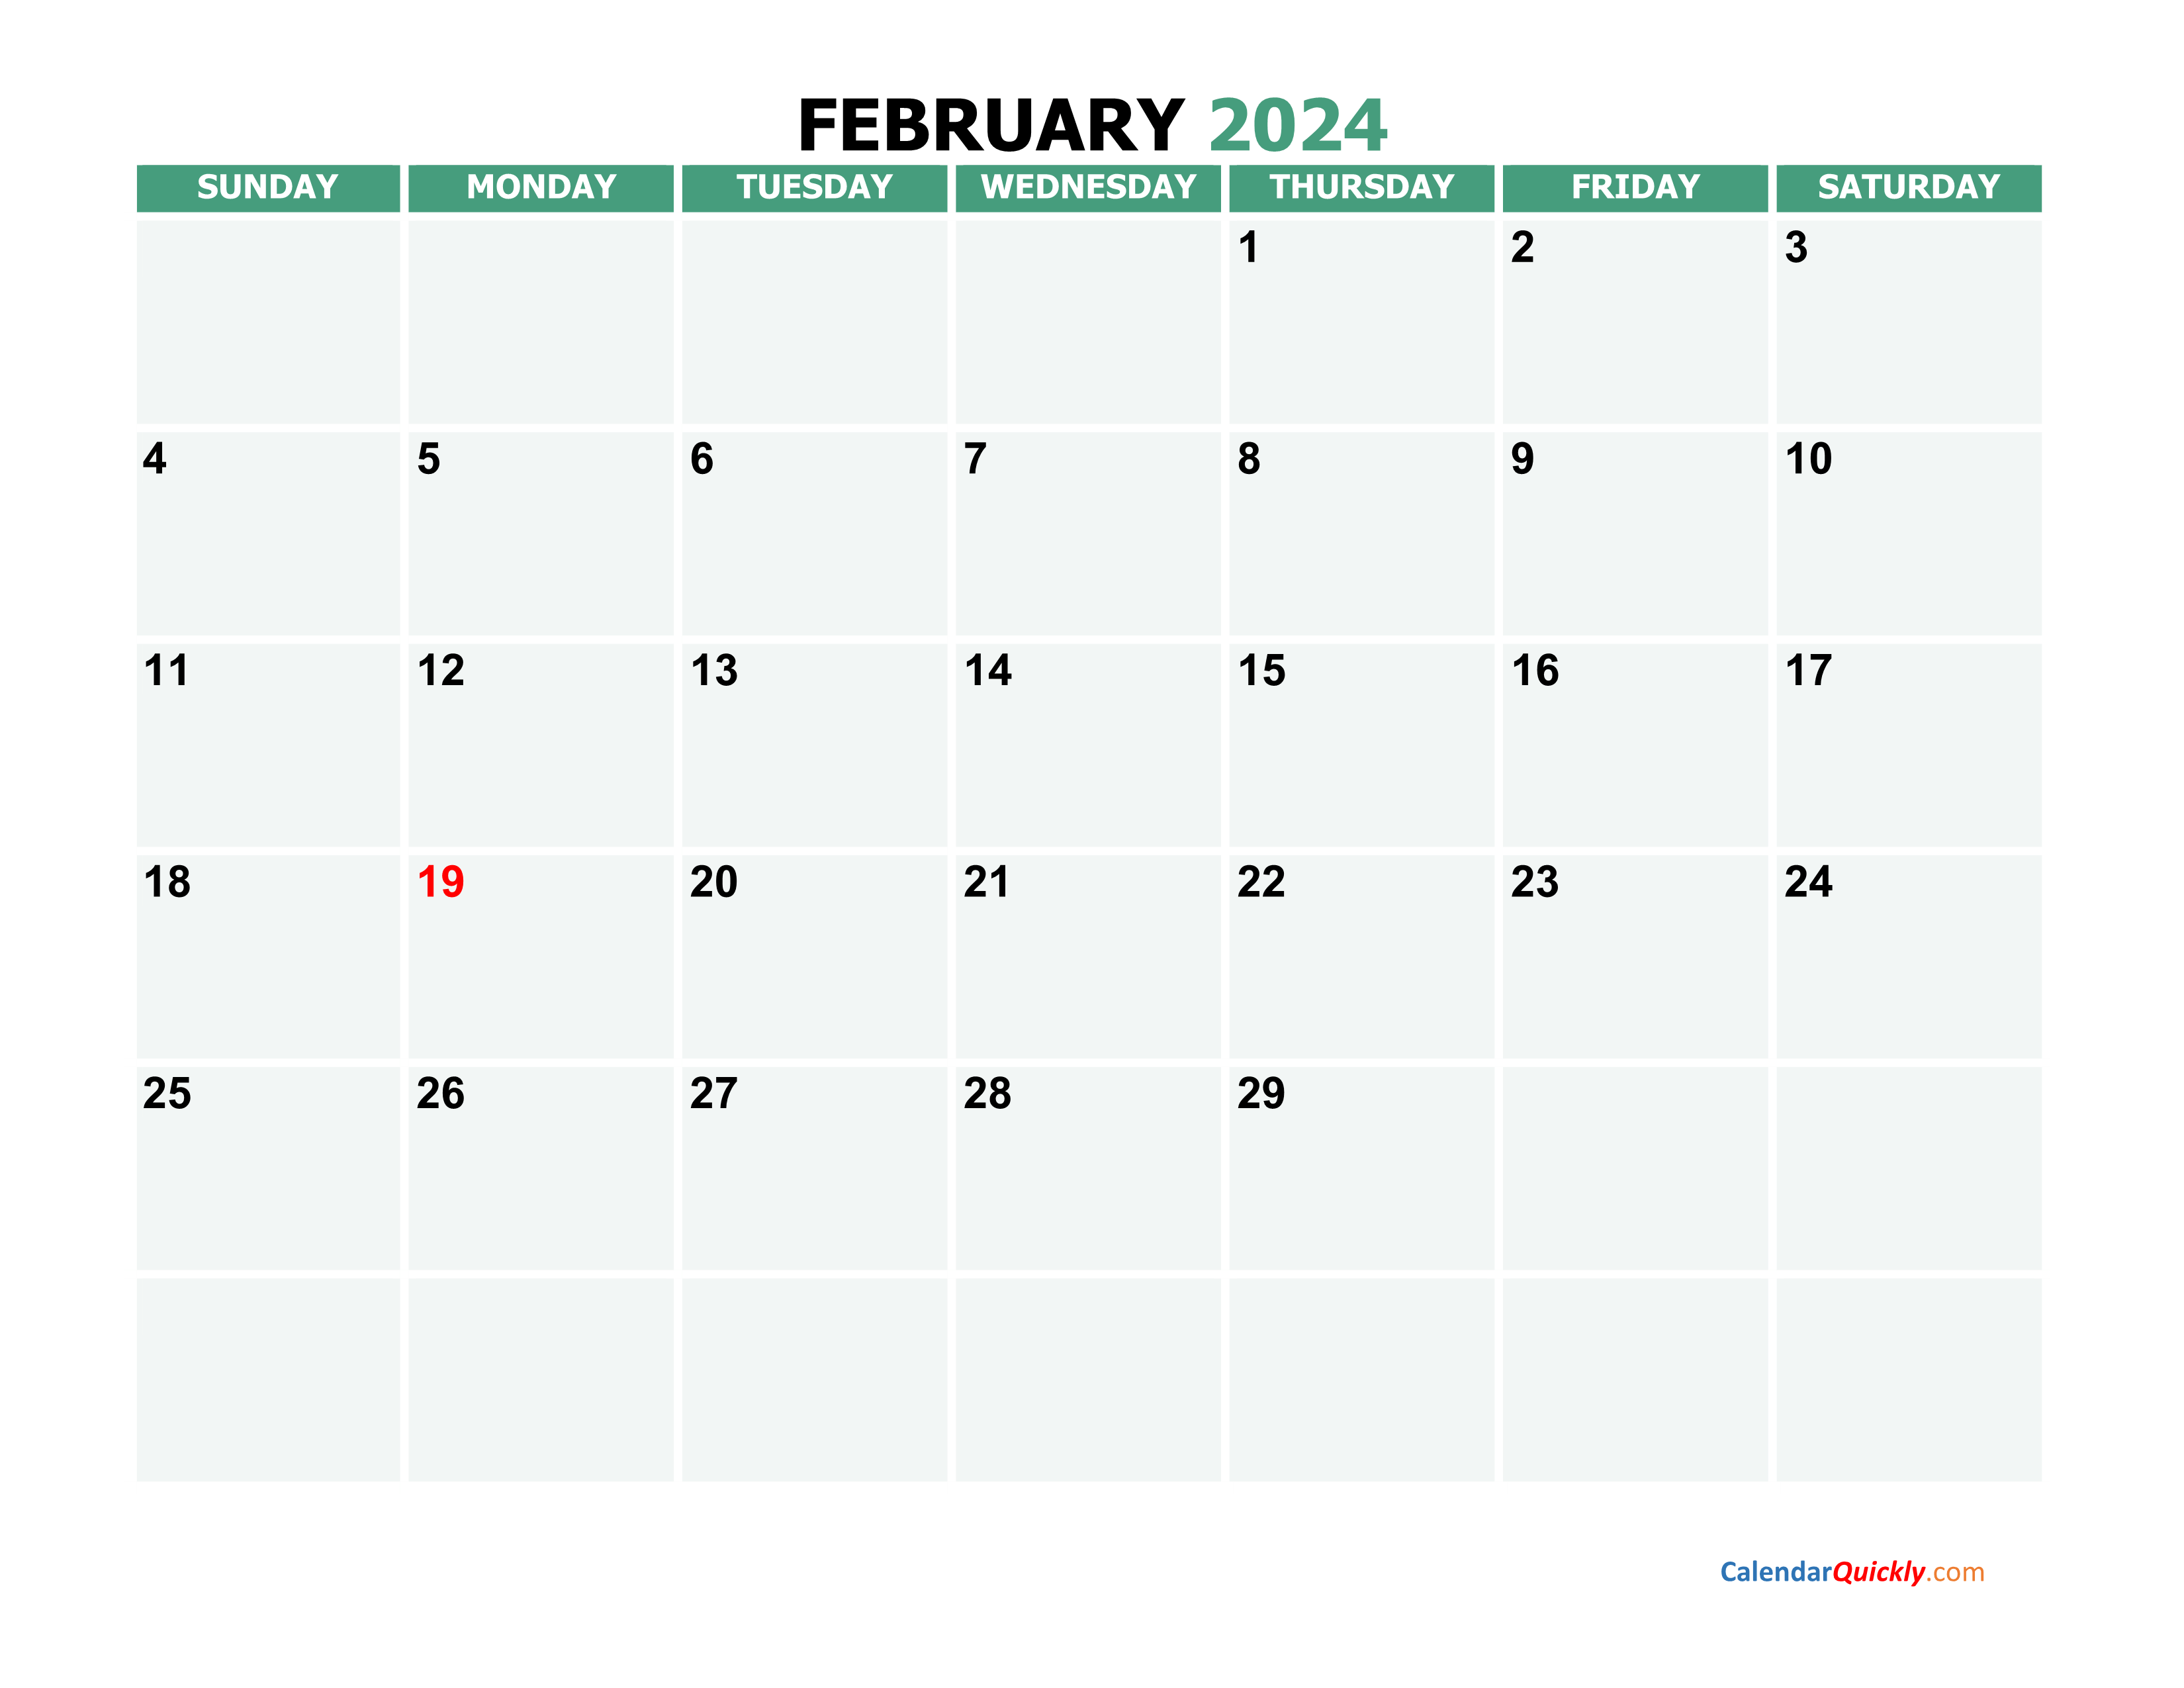 February 2024 Calendars Calendar Quickly